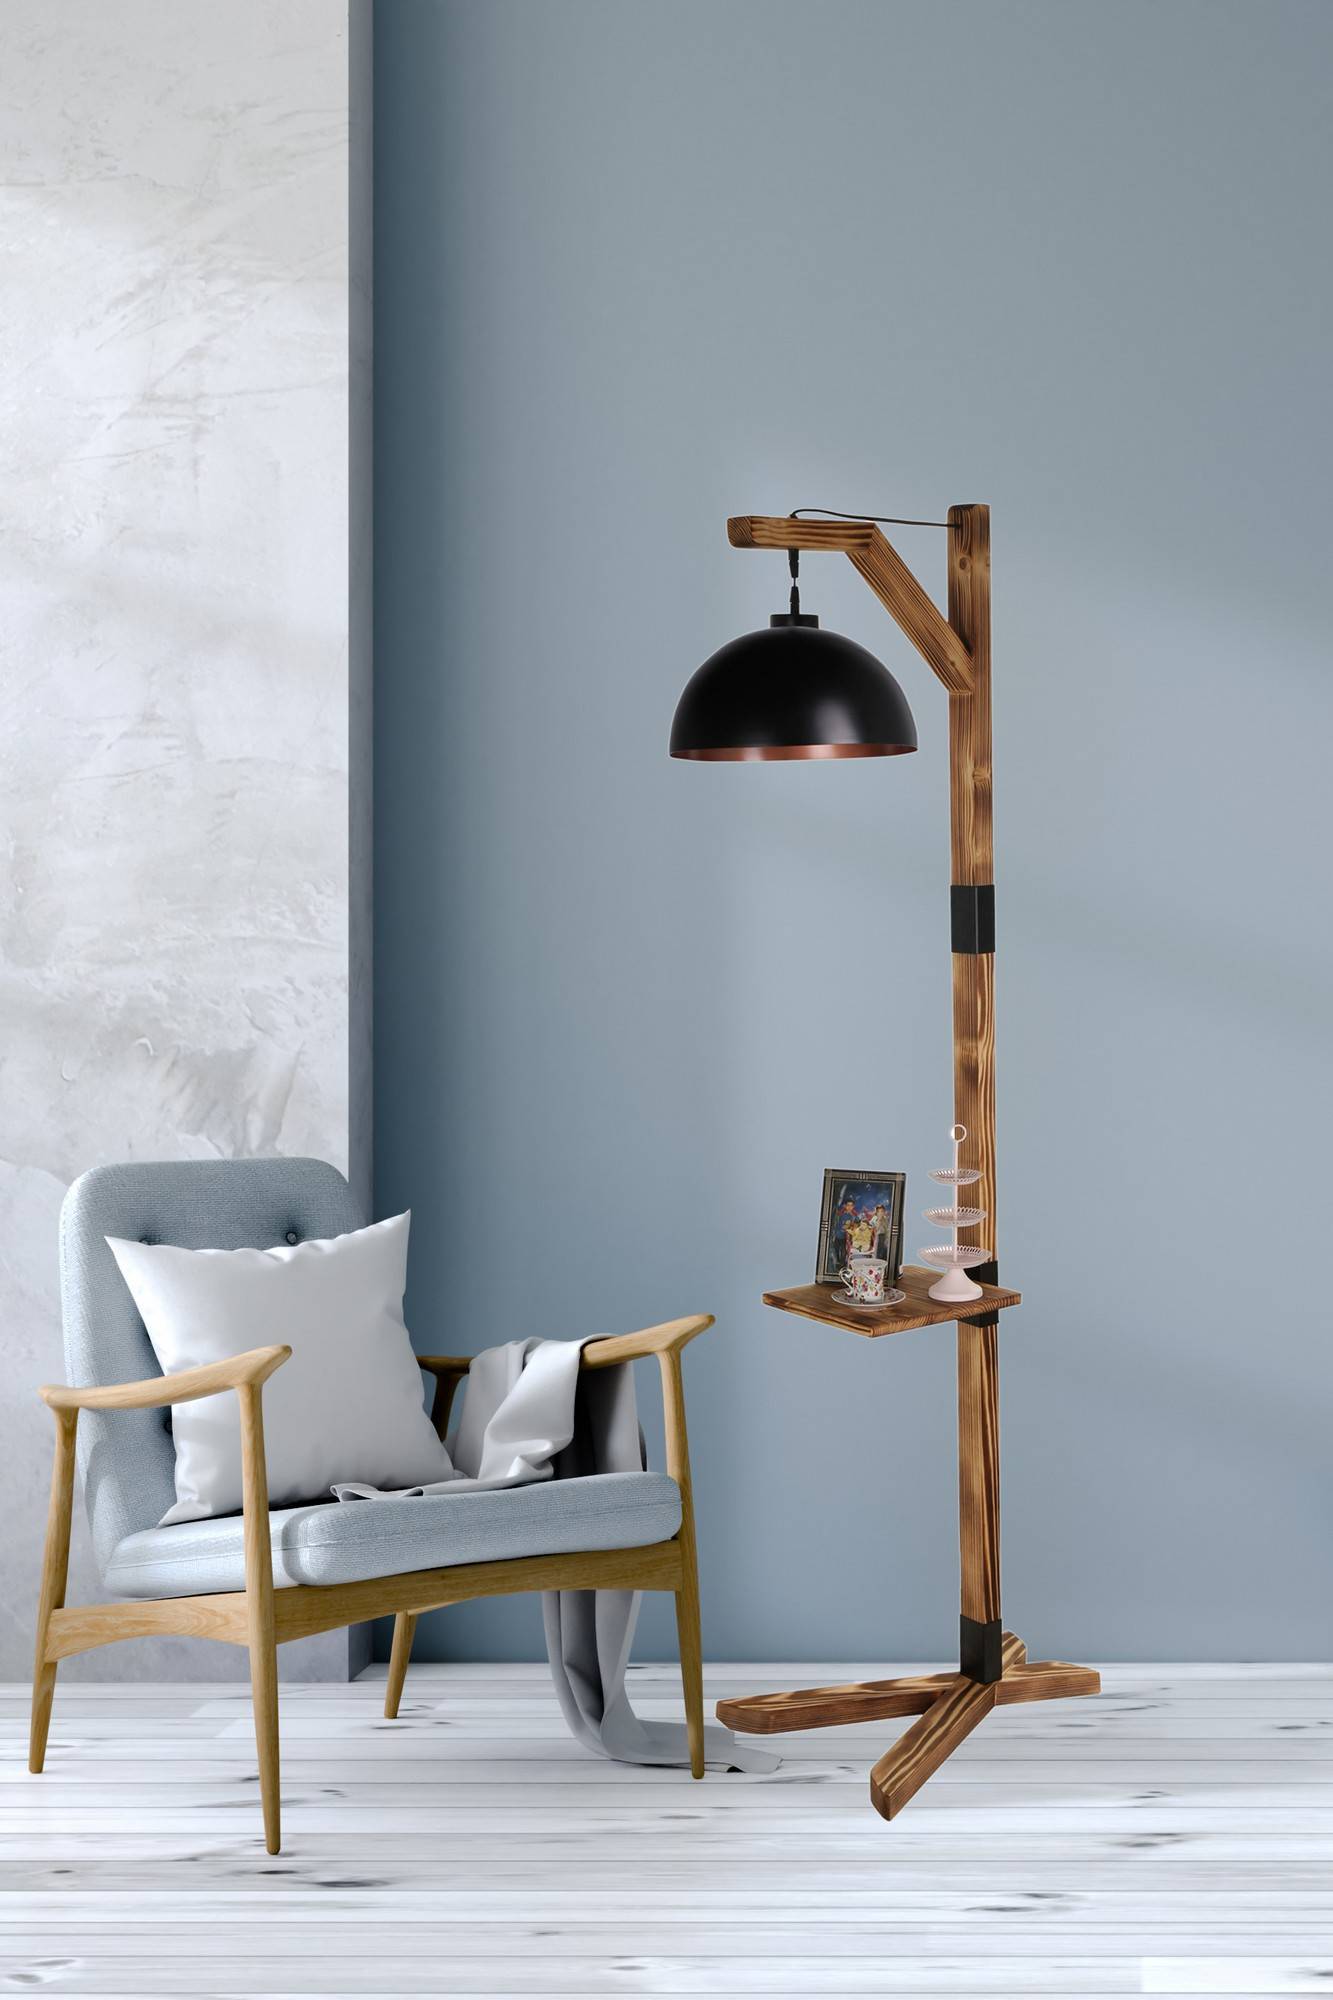 Lampe industrielle, lampadaire salon bois, lampe sur pied design